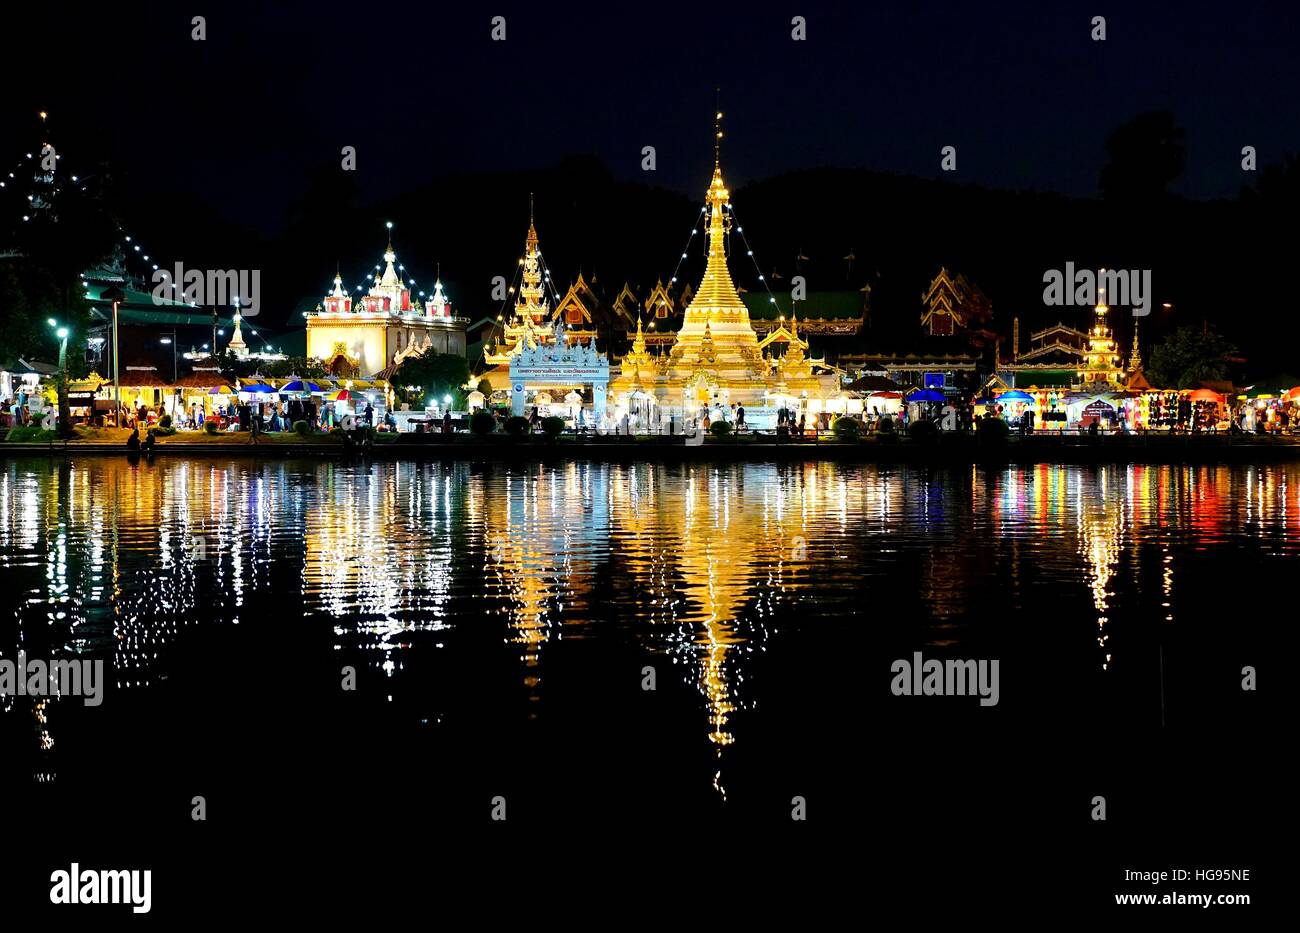 Burmese Architectural Style of Wat Chong Klang and Wat Chong Kham at night. Mae Hong Son, Northern Thailand Stock Photo